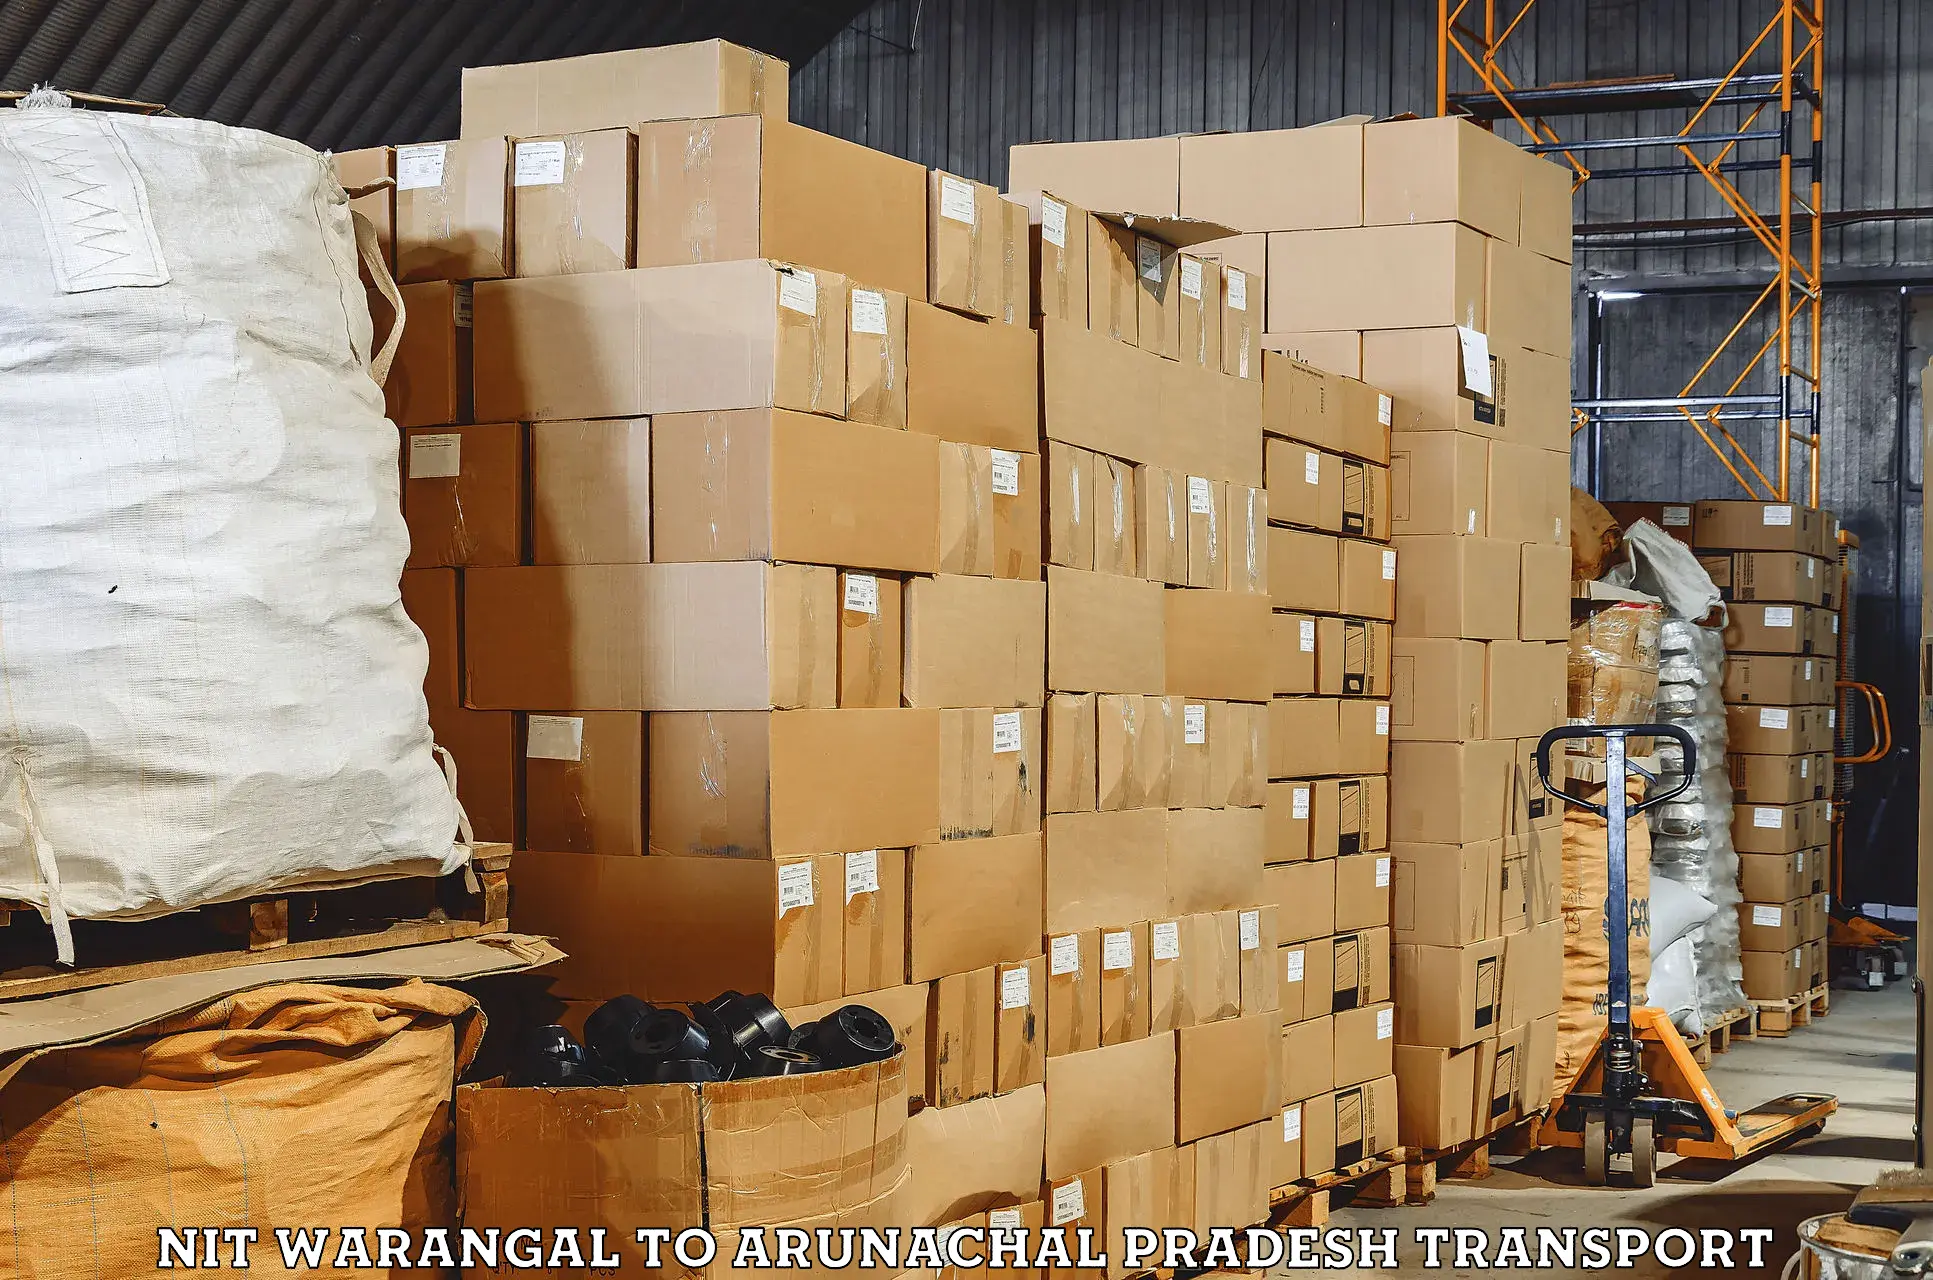 Furniture transport service NIT Warangal to Arunachal Pradesh